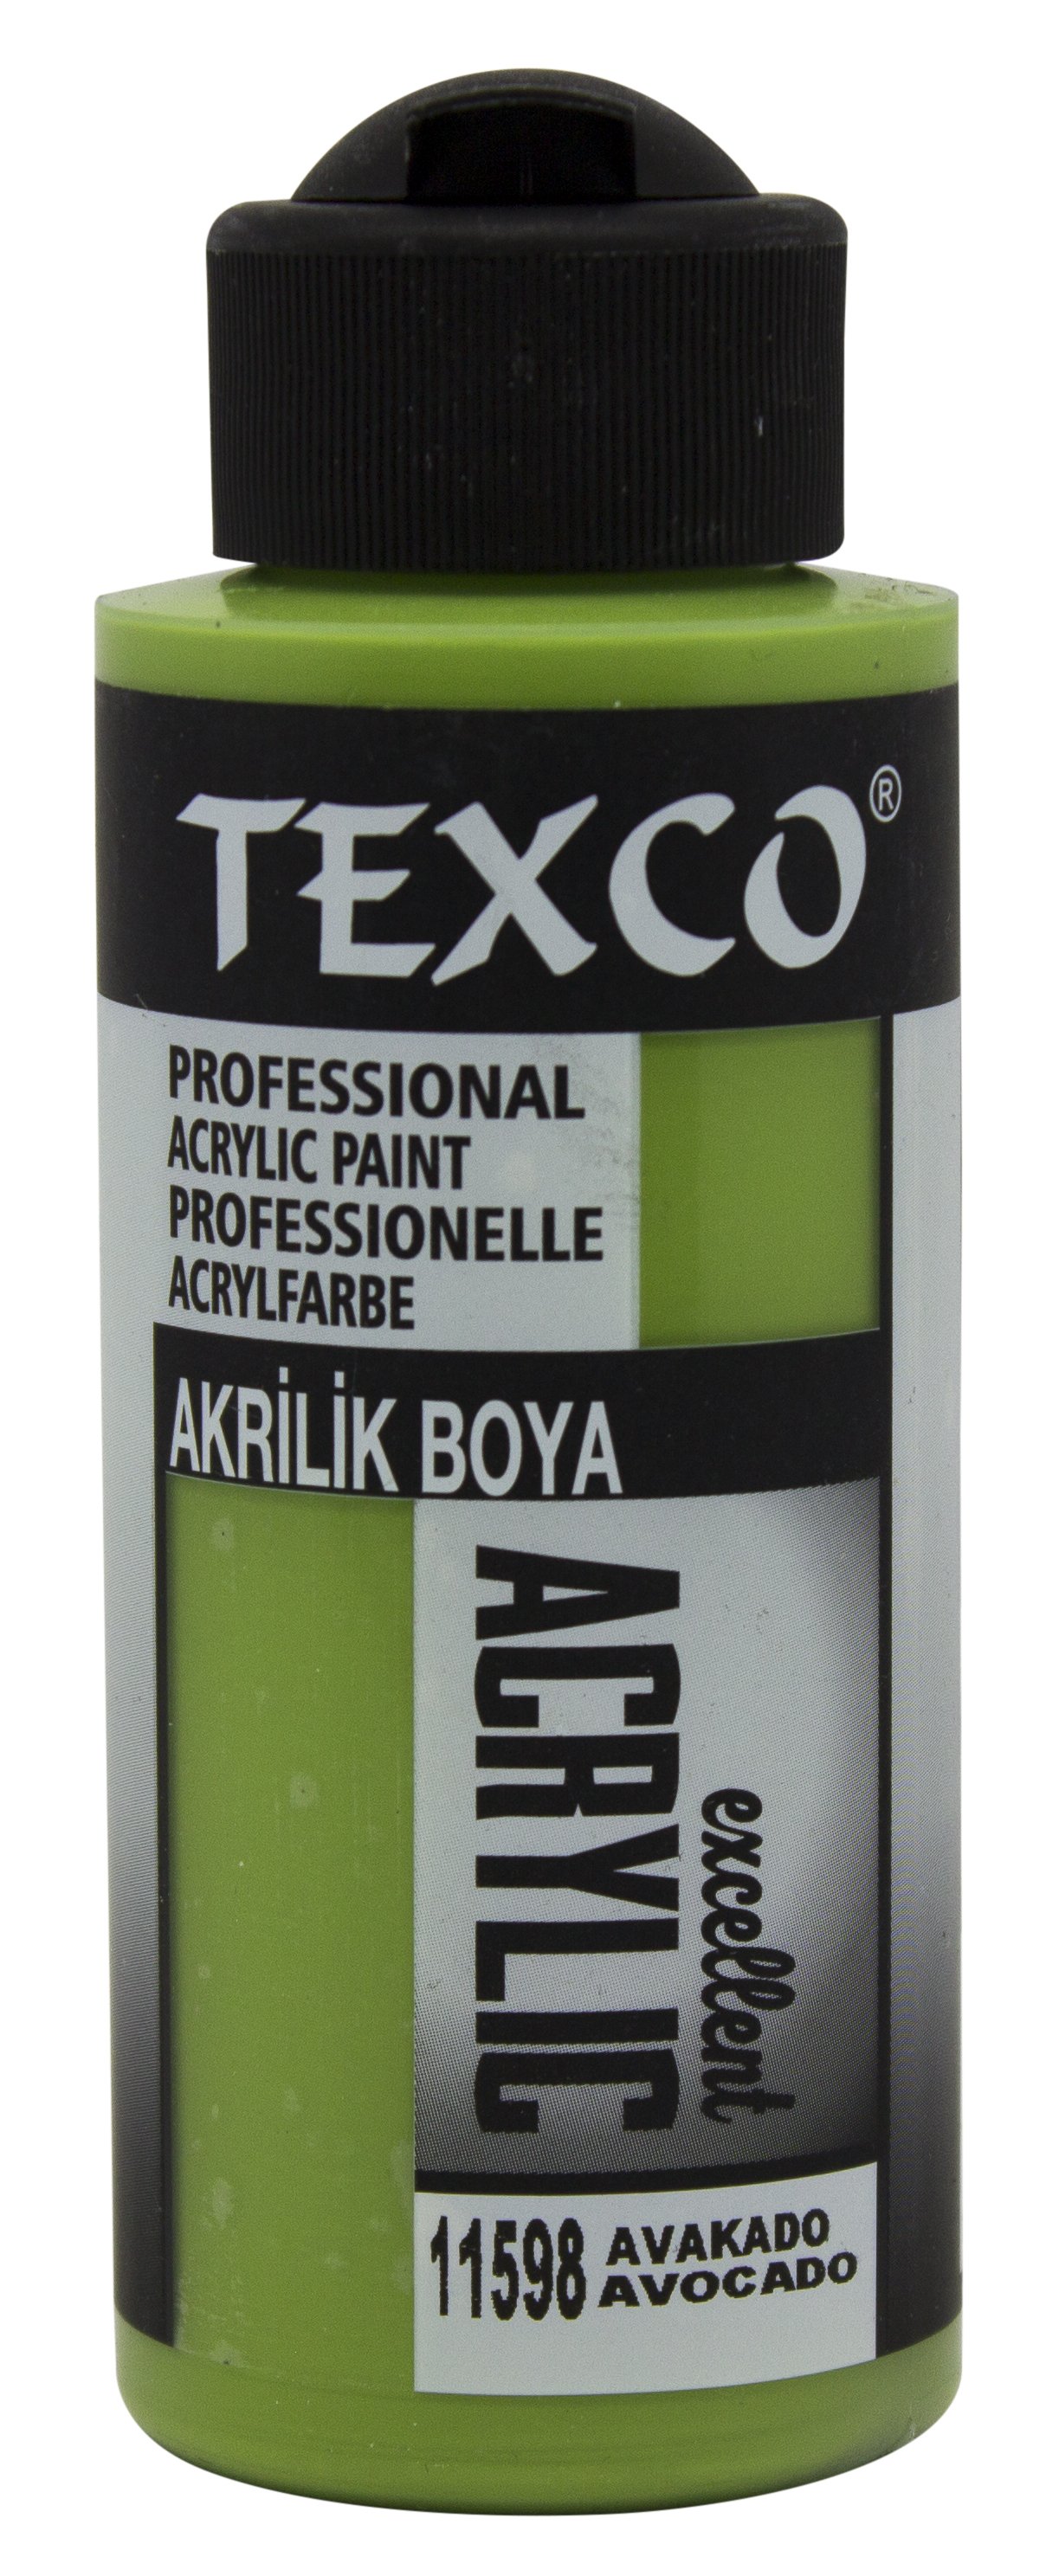 Texco Excellent Akrilik Boya 11598-Avakado 110 cc